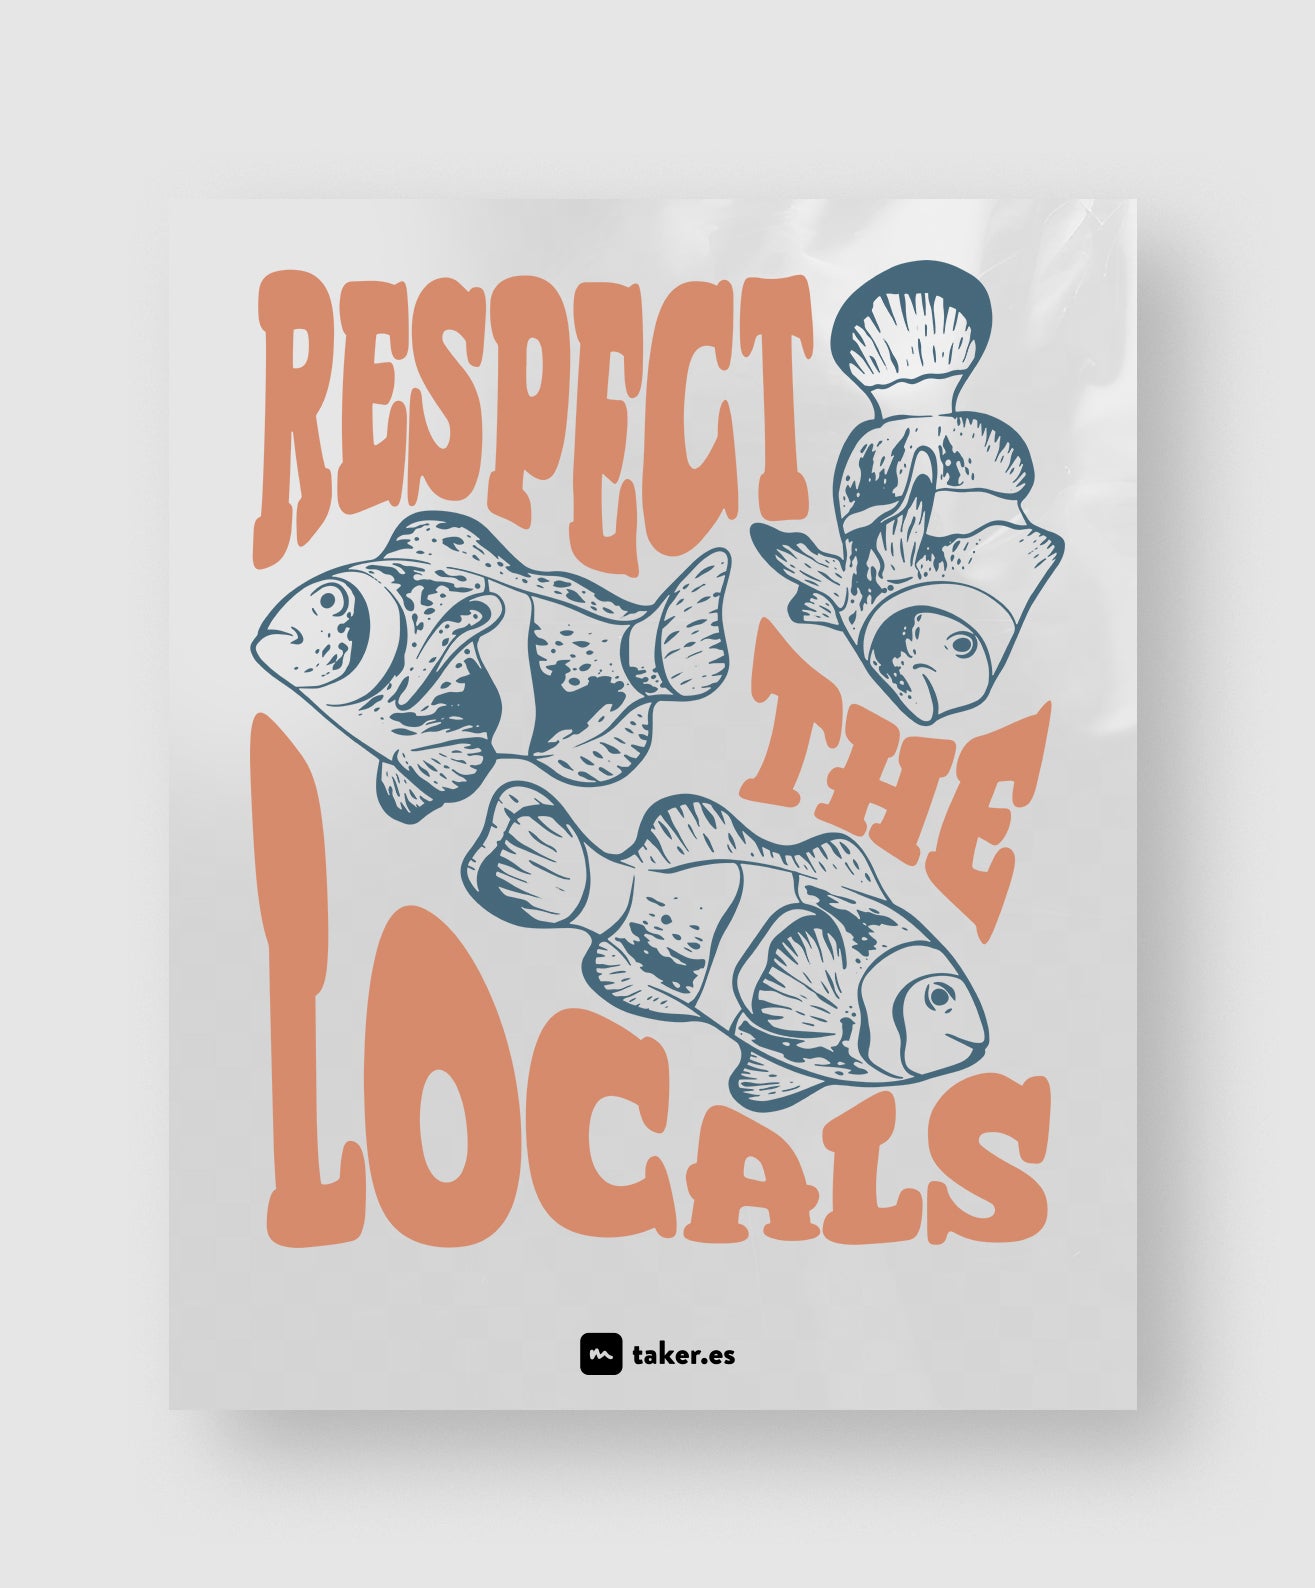 Respect the Locals